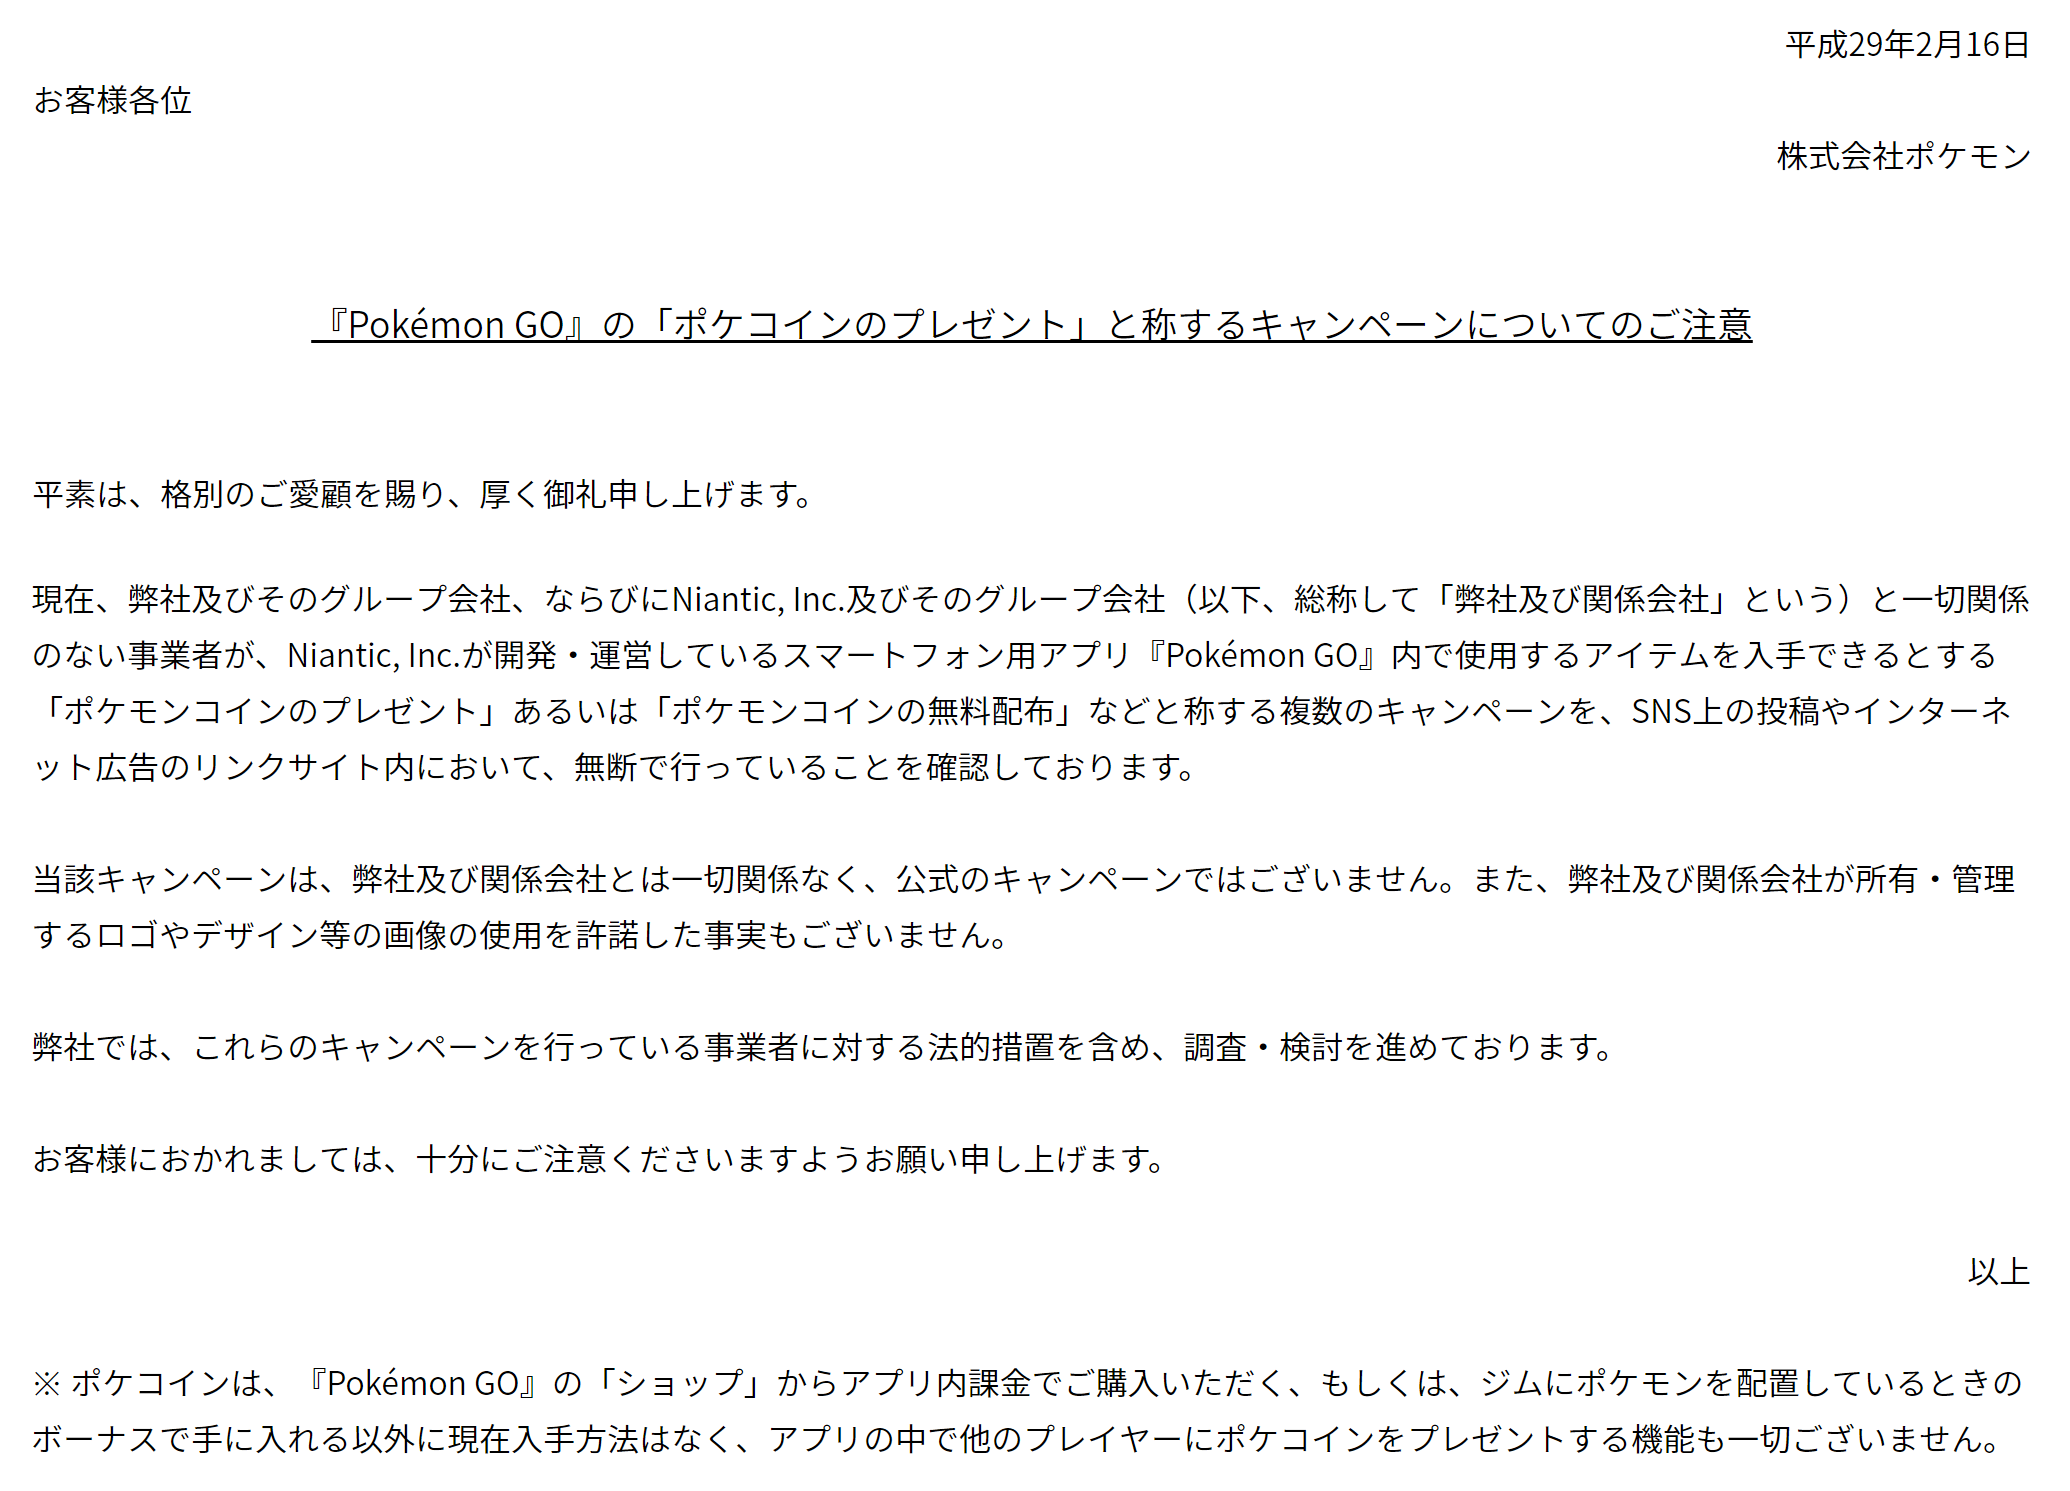 ポケモンgoのポケコイン無料配布や大量配布についての注意喚起 日本ポイントサイト情報 Pointjp